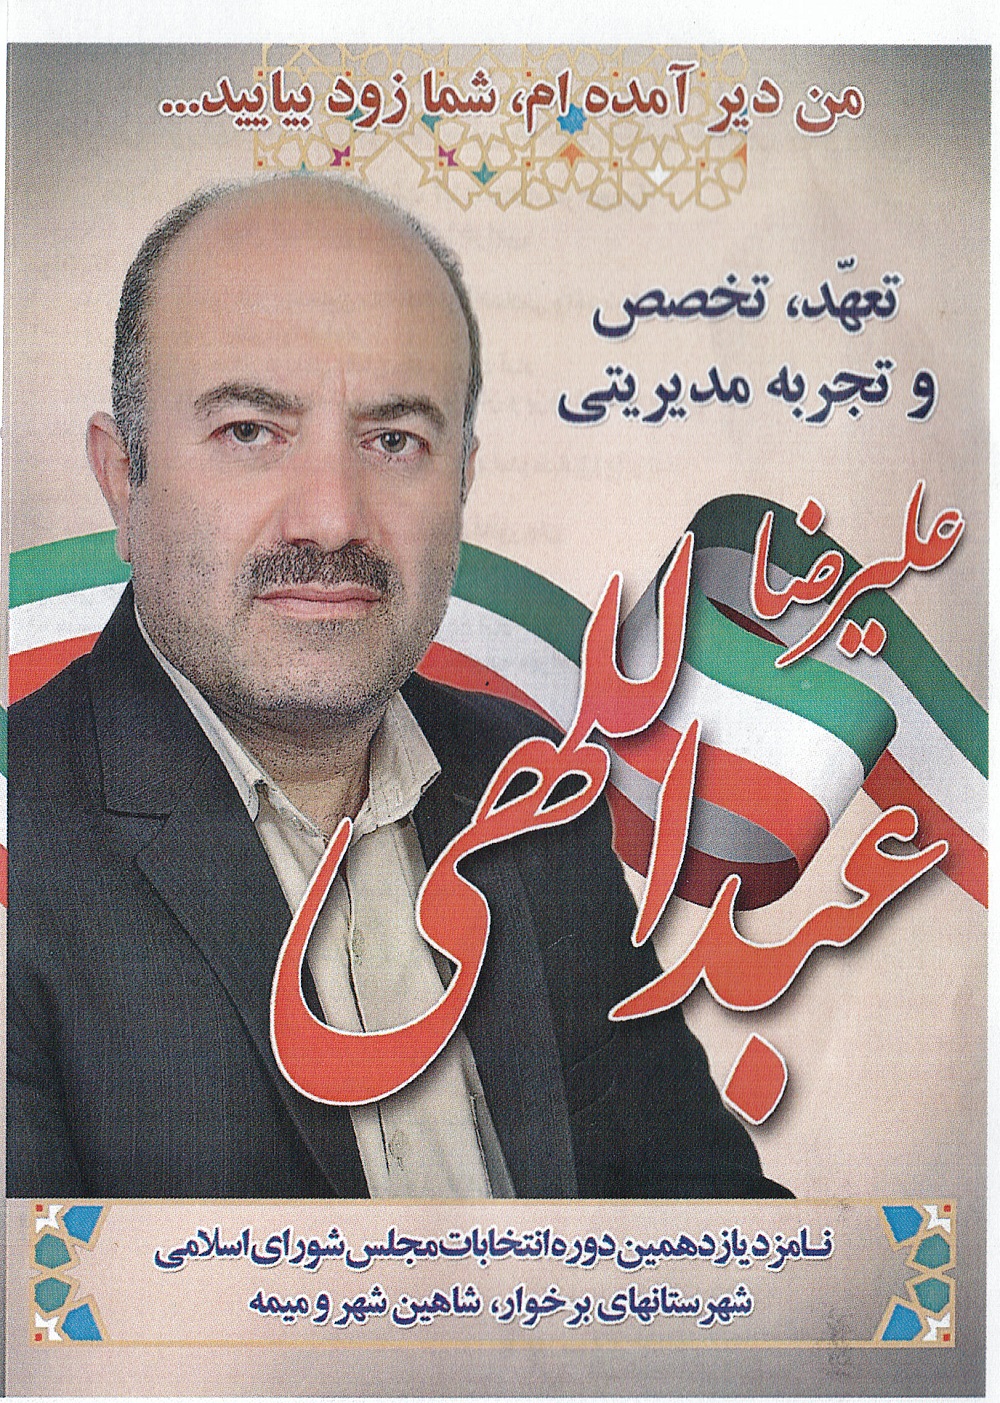 کاندید مجلس برخوار شاهین شهر ومیمه